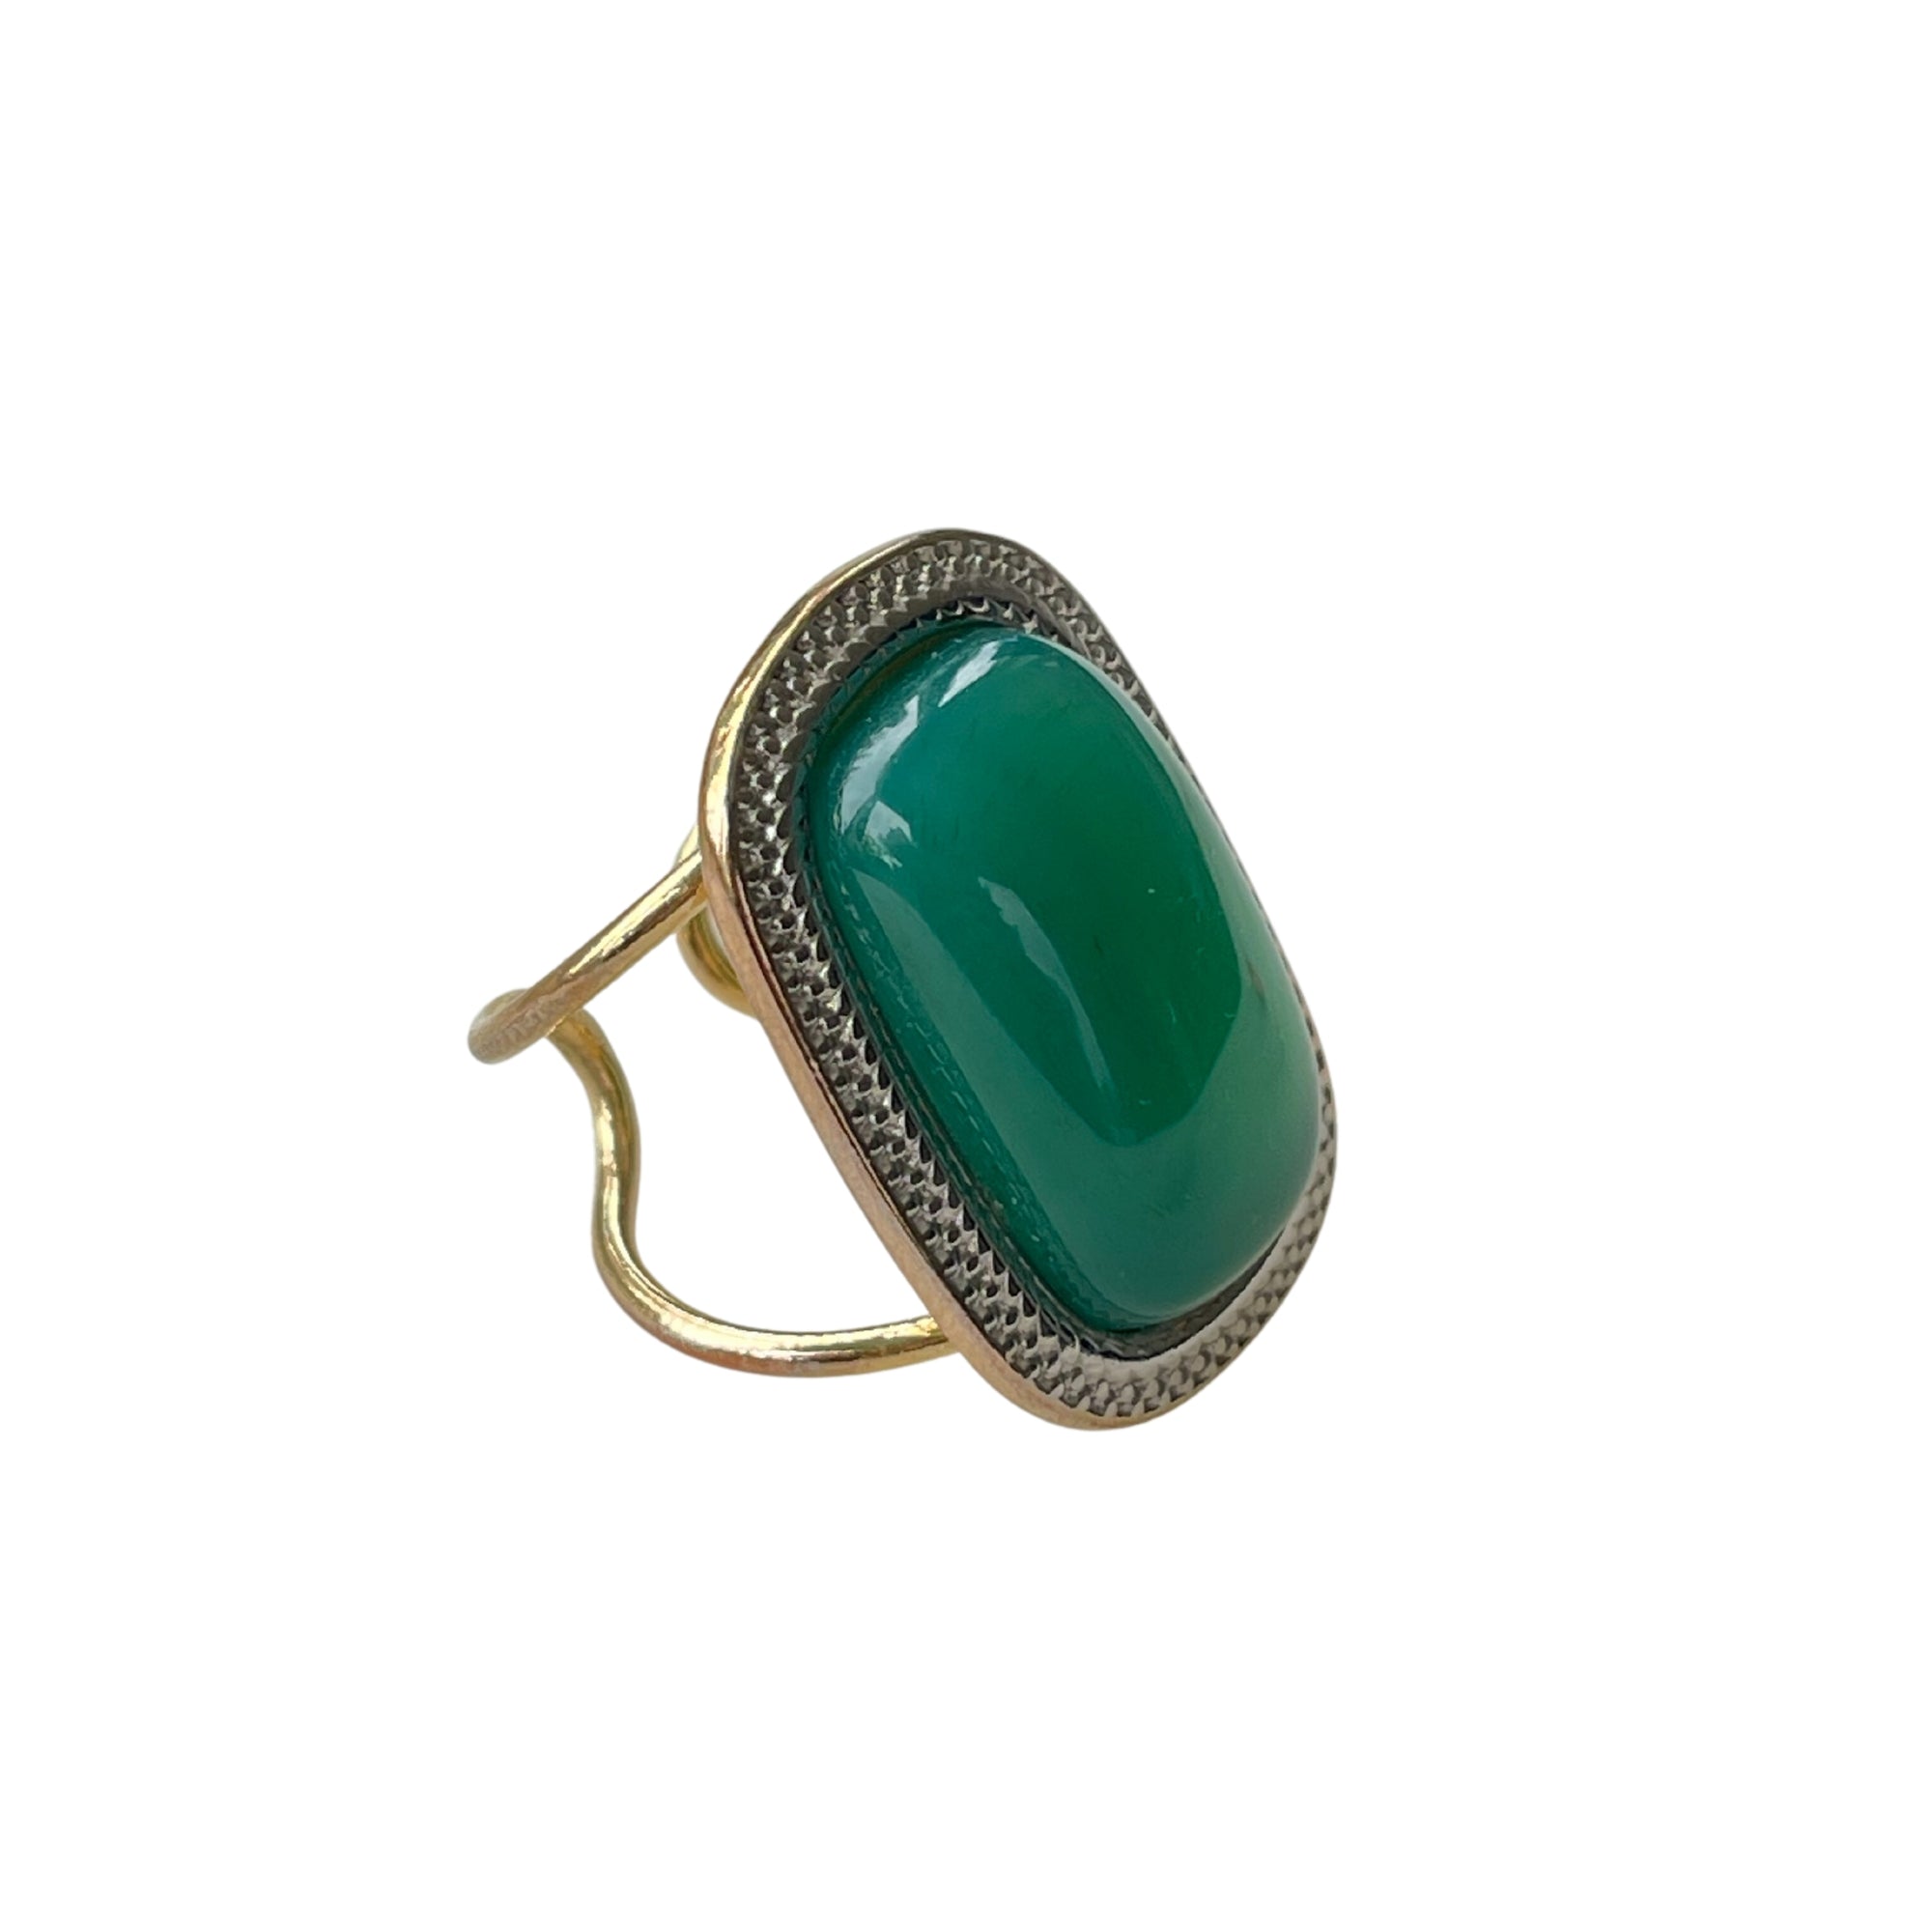  Der "MARIANA" Ring aus 18 K vergoldetem Messing mit grünem Achat ist ein eleganter Hingucker.  Ein offener Cocktailring in strahlendem Grün. Verstellbar.  Gefertigt aus hochwertigem 18 K vergoldetem Messing mit faszinierendem Achat. Perfekt für Frauen, die besondere und elegante Stücke schätzen